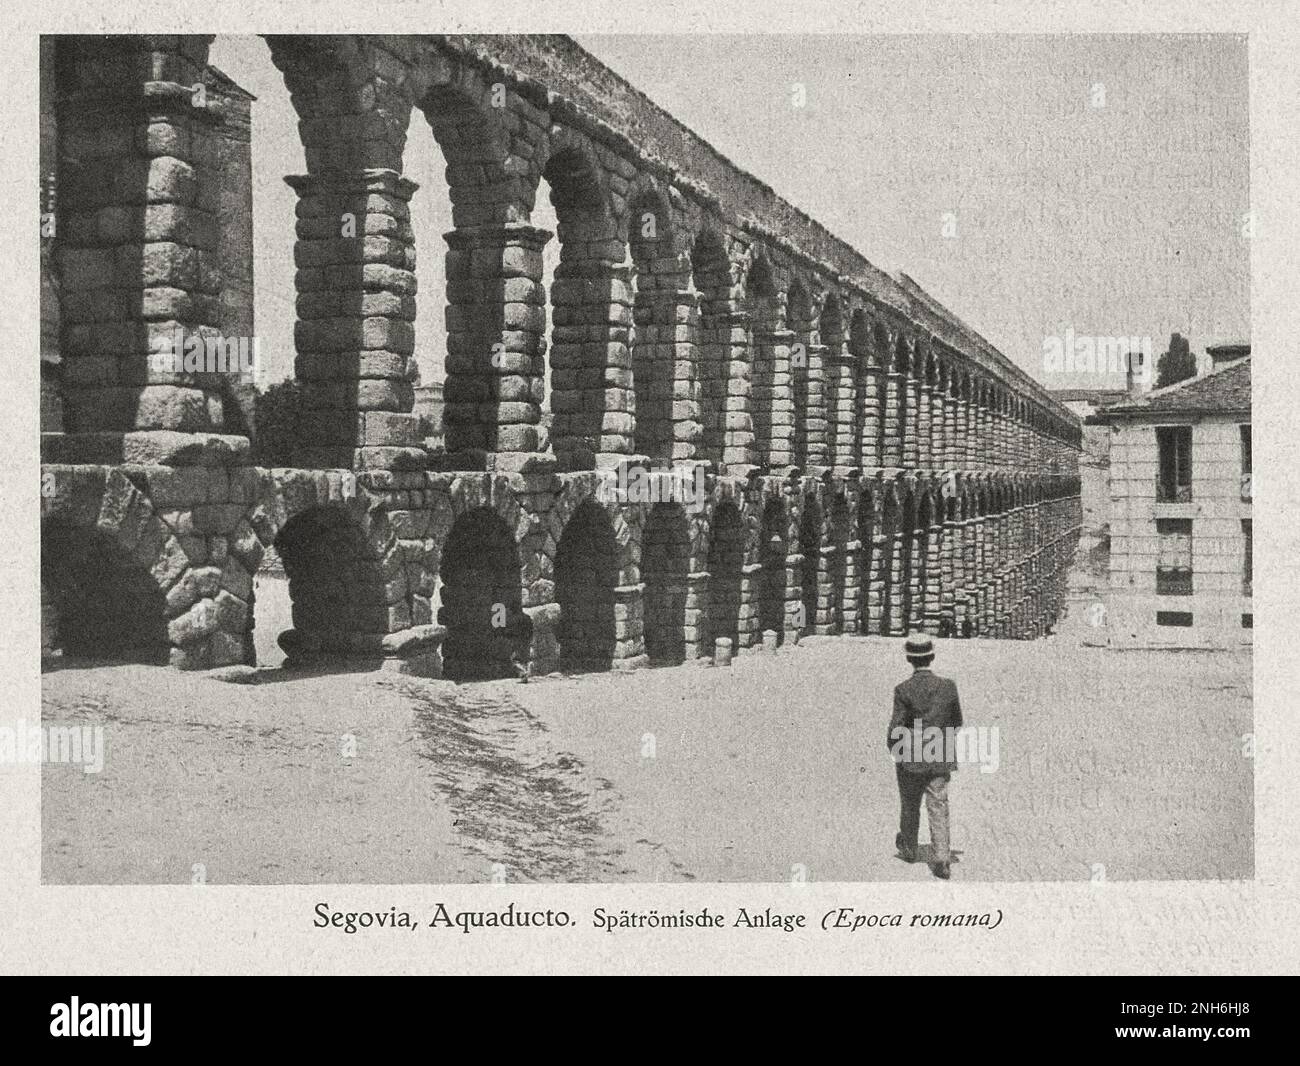 Architecture de la vieille Espagne. Photo d'époque de la construction romaine tardive (aqueduc). Ségovie. Castille et León, Espagne Banque D'Images